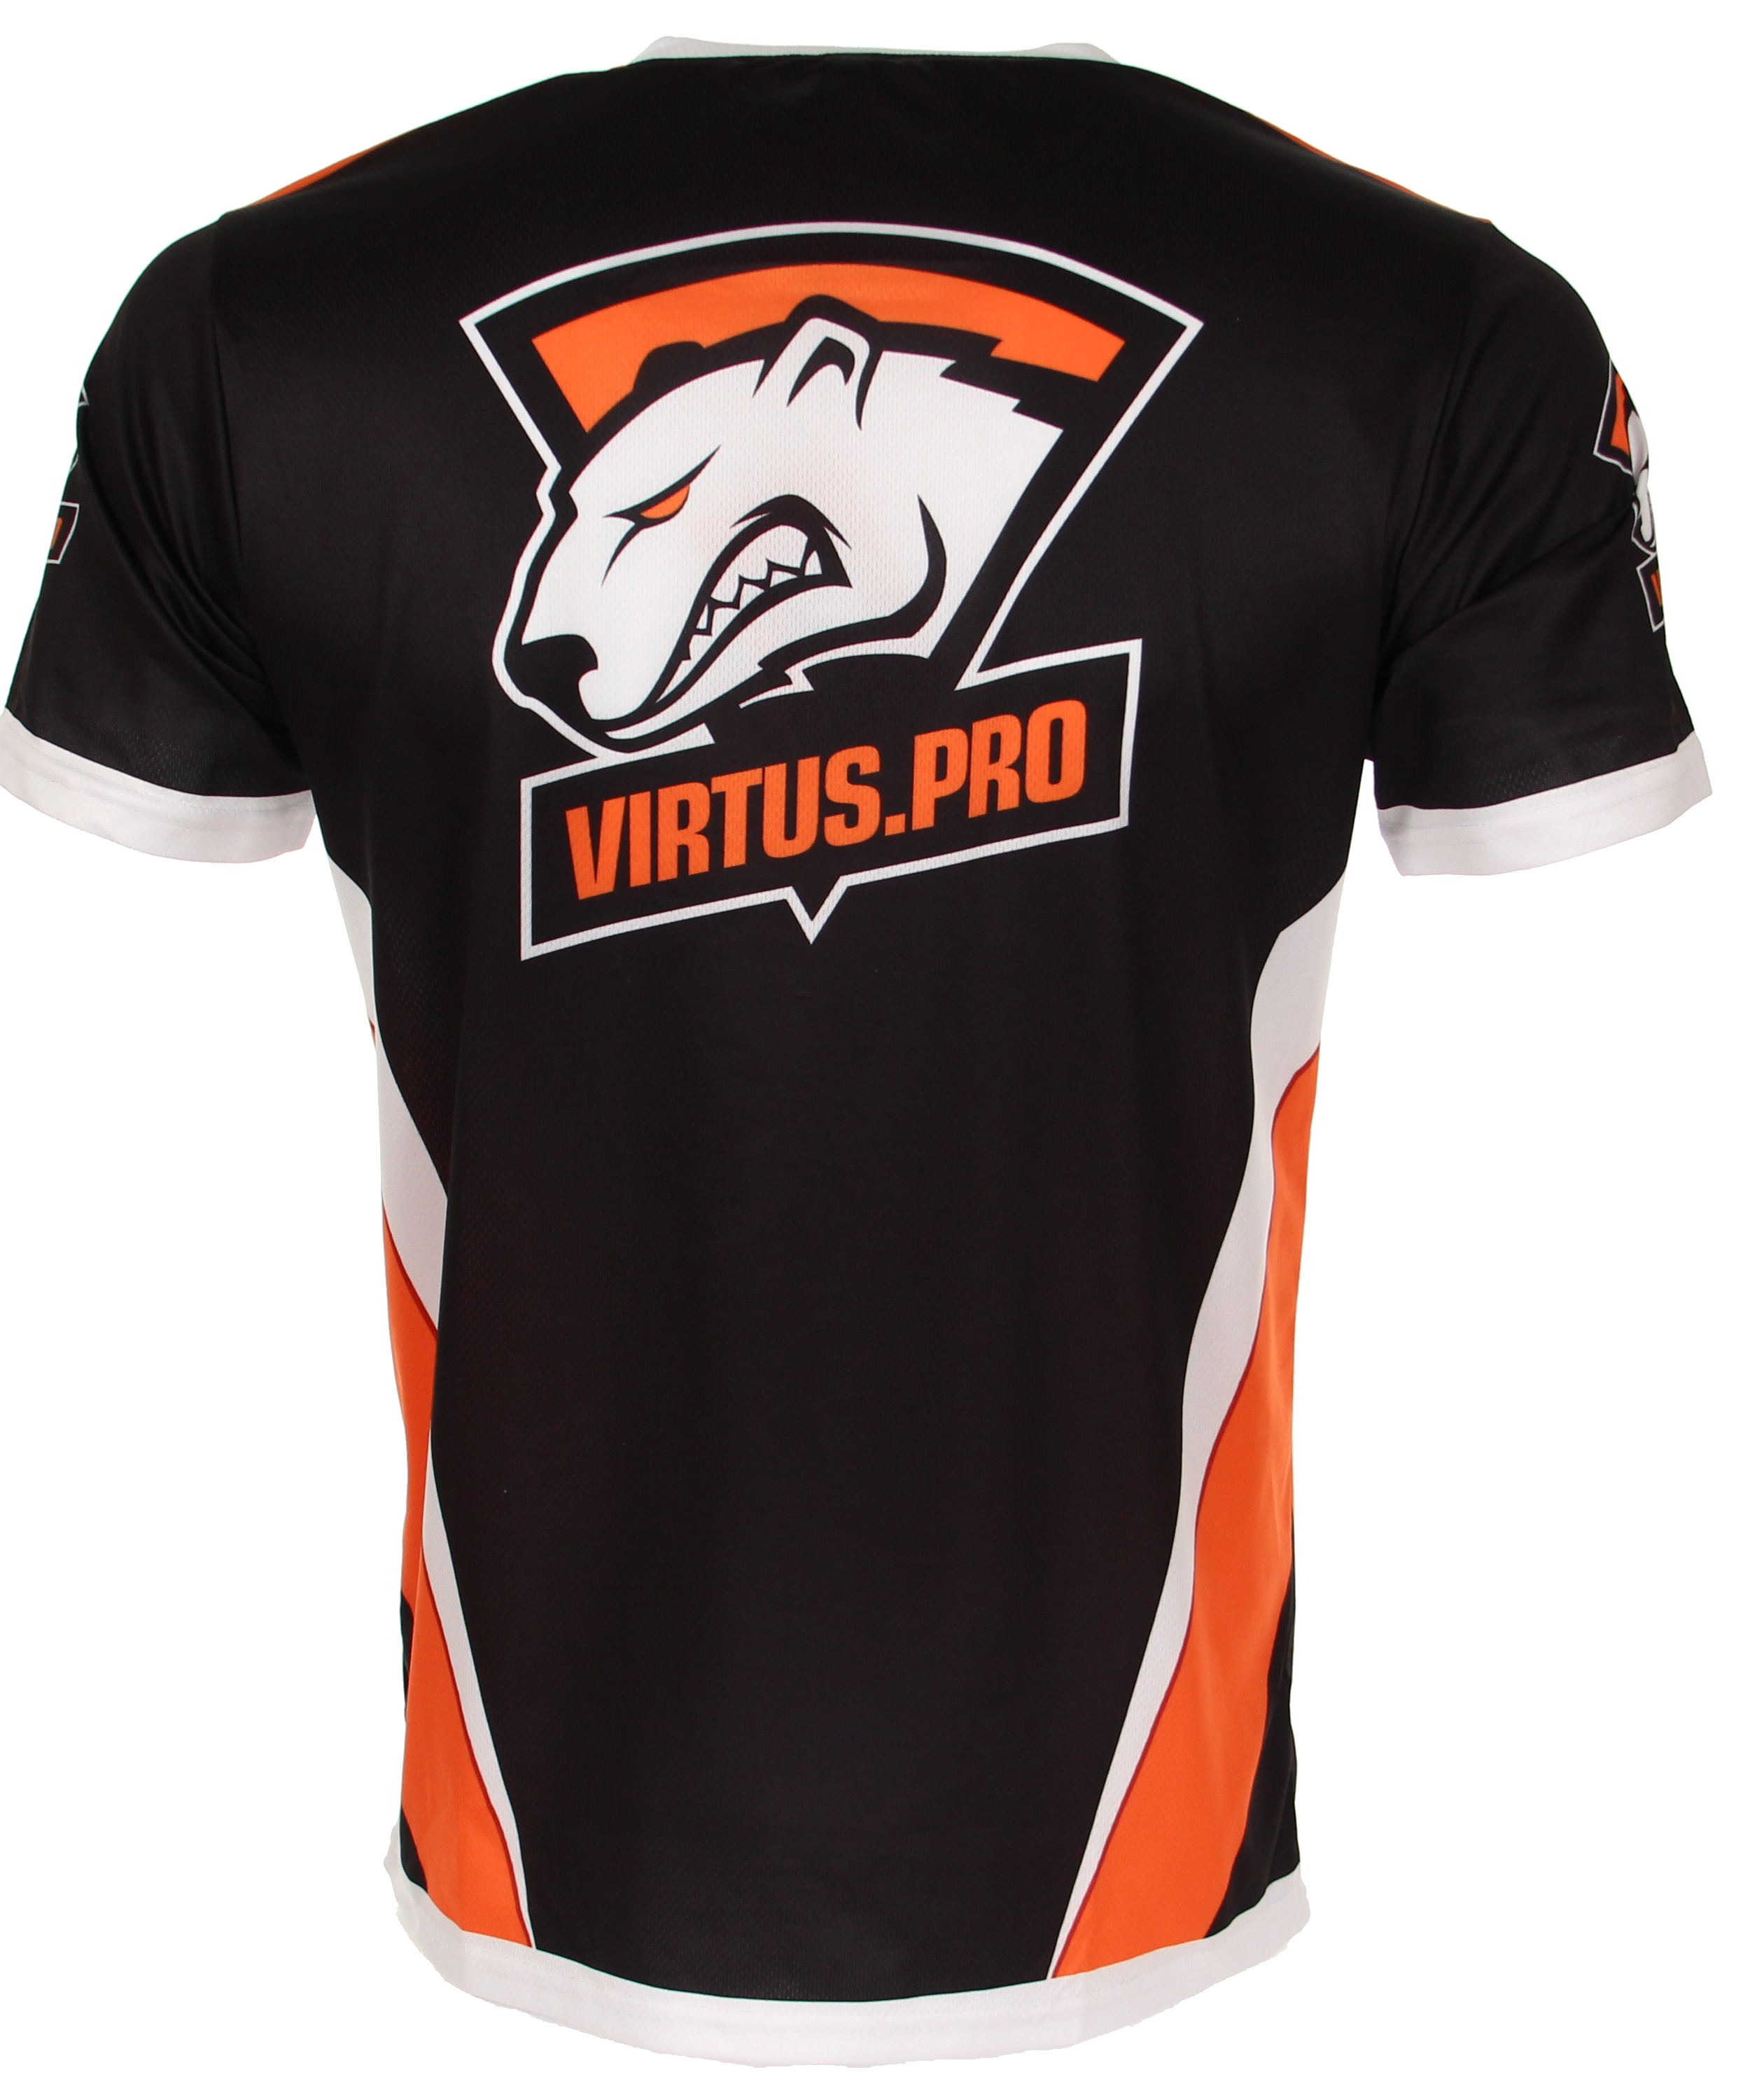 Virus pro. Футболка Virtus Pro 2021. Джерси Virtus.Pro. Футболка Virtus.Pro 2019 (s). Kappa Virtus Pro футболка.